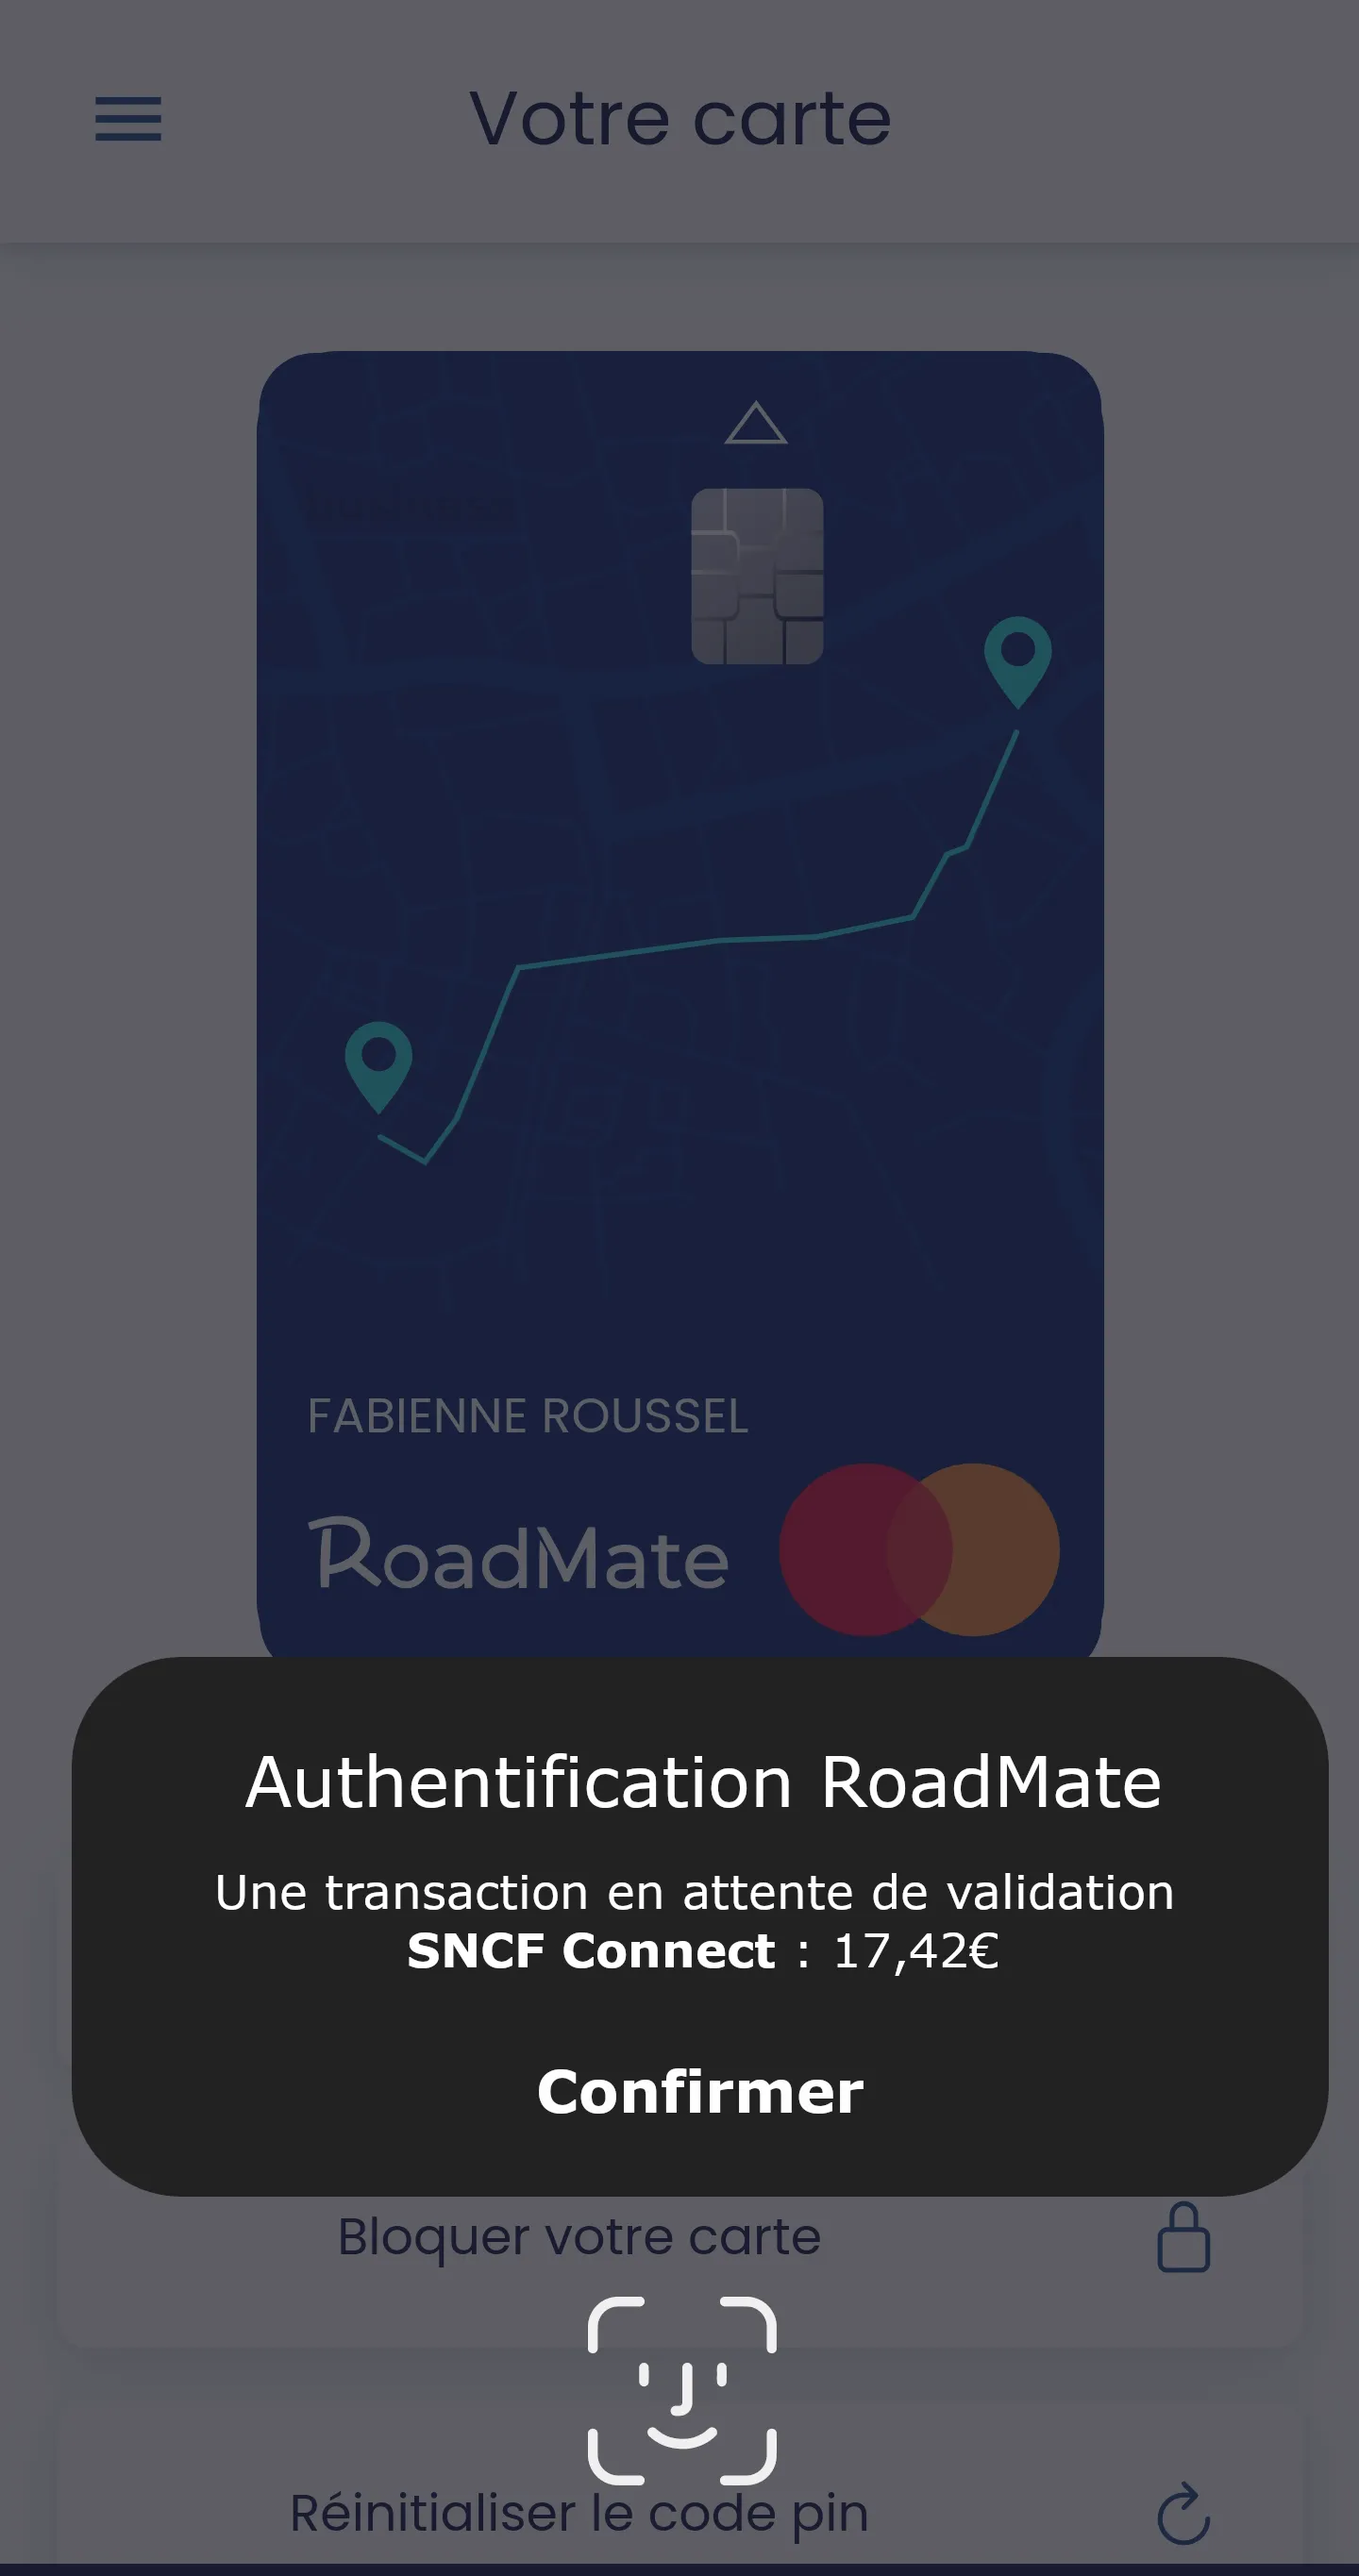 Grâce à la technologie SCA, la carte RoadMate propose une authentification forte pour garantir la sécurité des transactions et la protection des données personnelles.